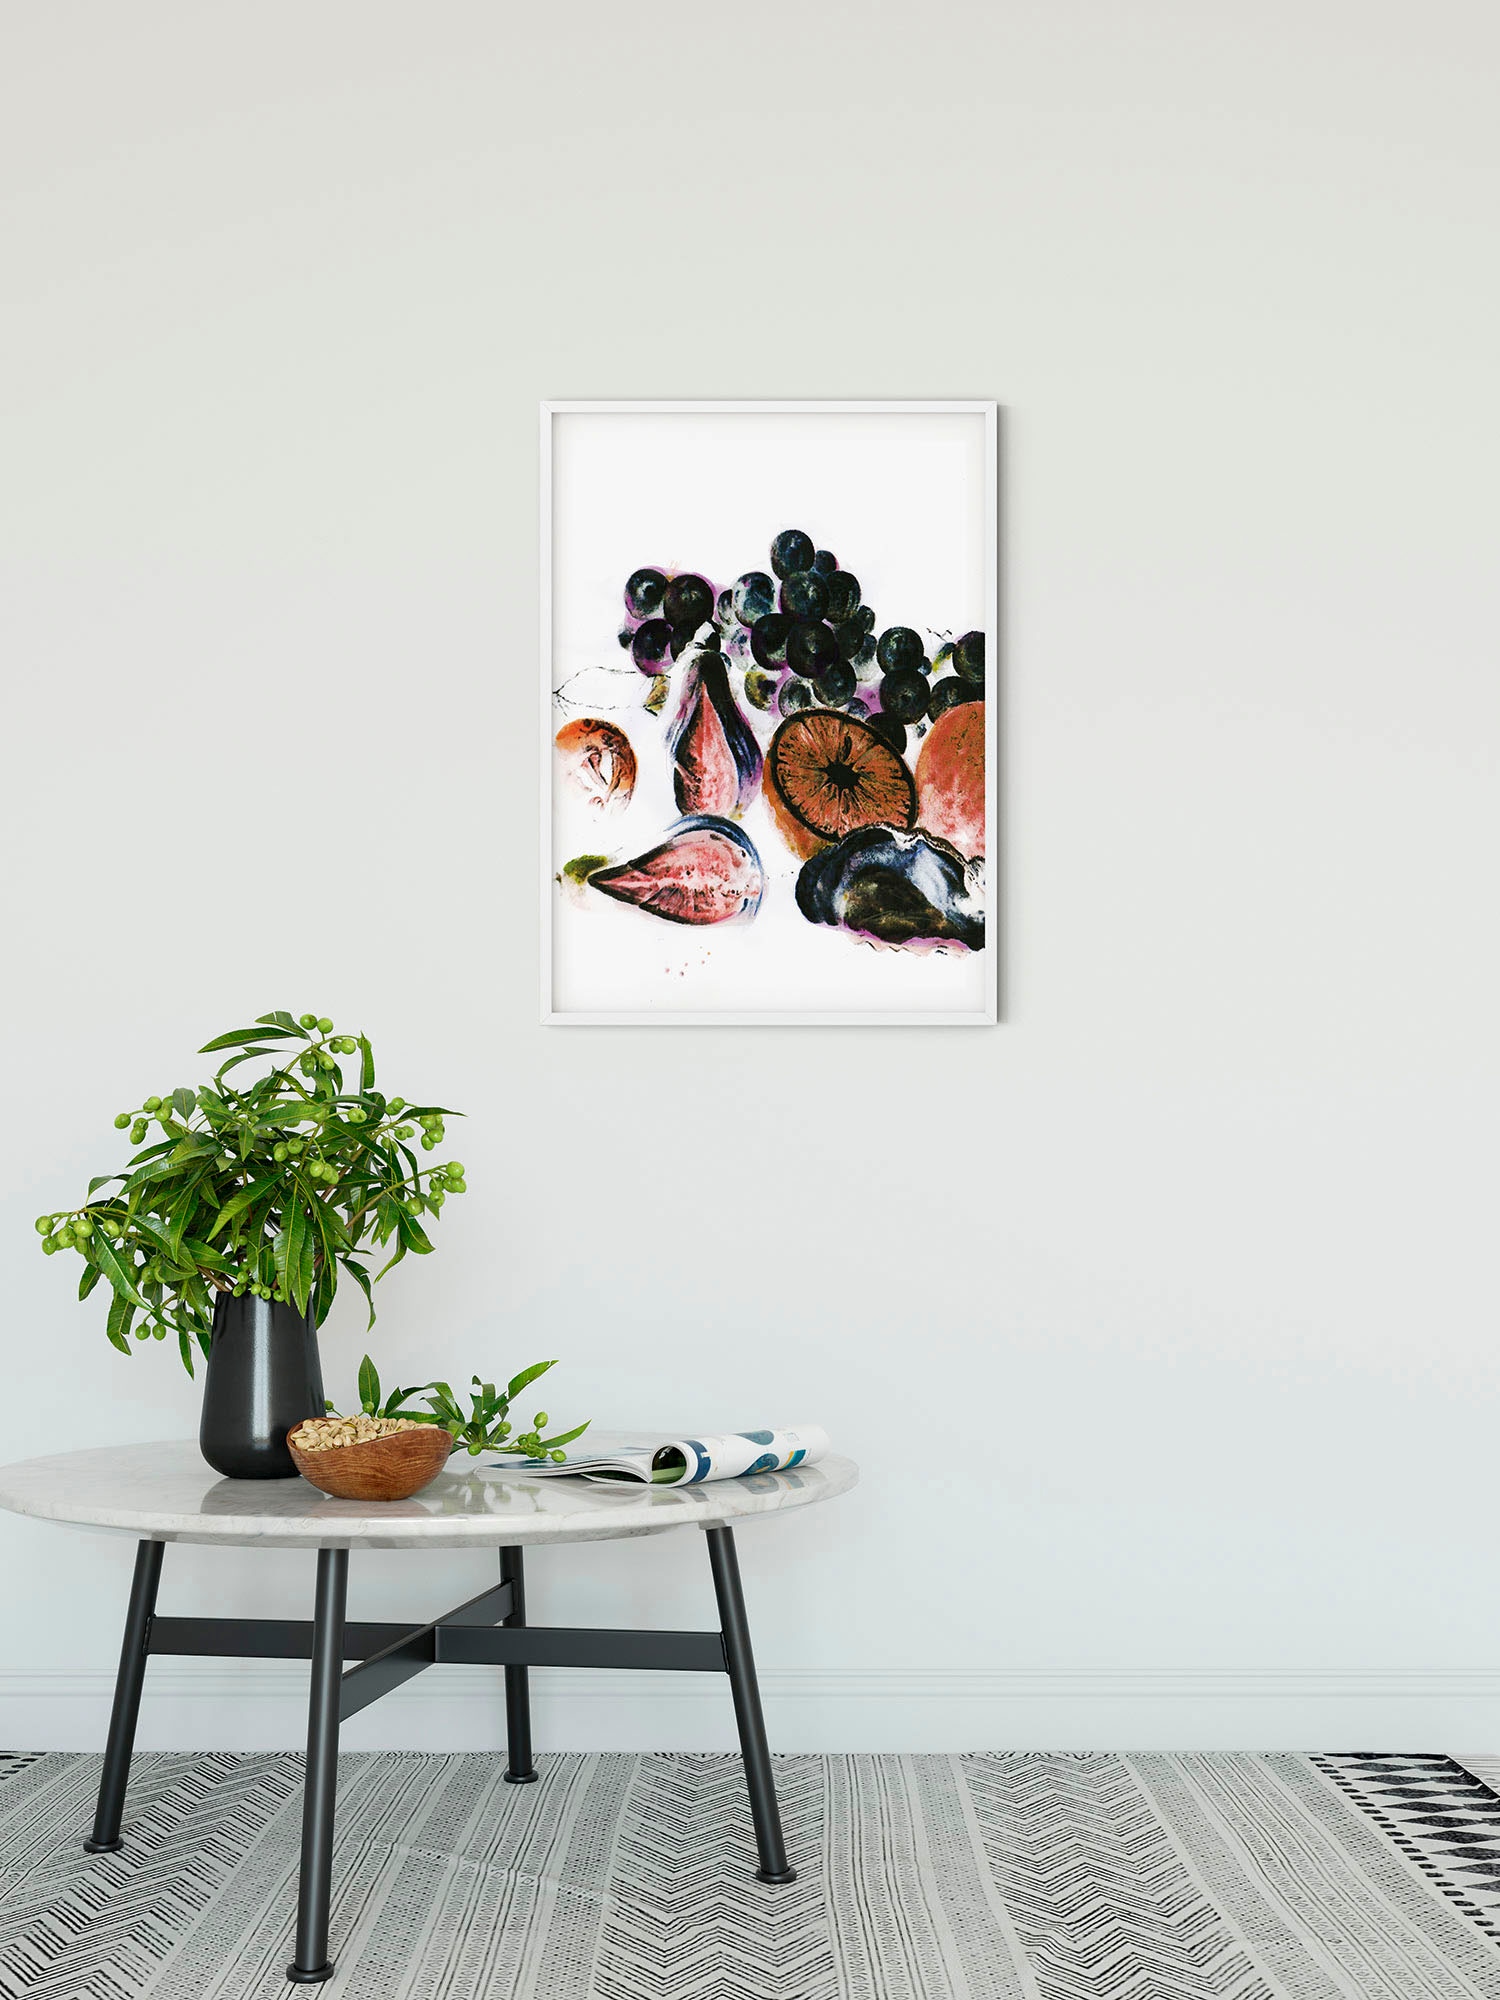 Komar Wandbild »Fruits d'automne«, (1 St.), Deutsches Premium-Poster Fotopapier mit seidenmatter Oberfläche und hoher Lichtbeständigkeit. Für fotorealistische Drucke mit gestochen scharfen Details und hervorragender Farbbrillanz.